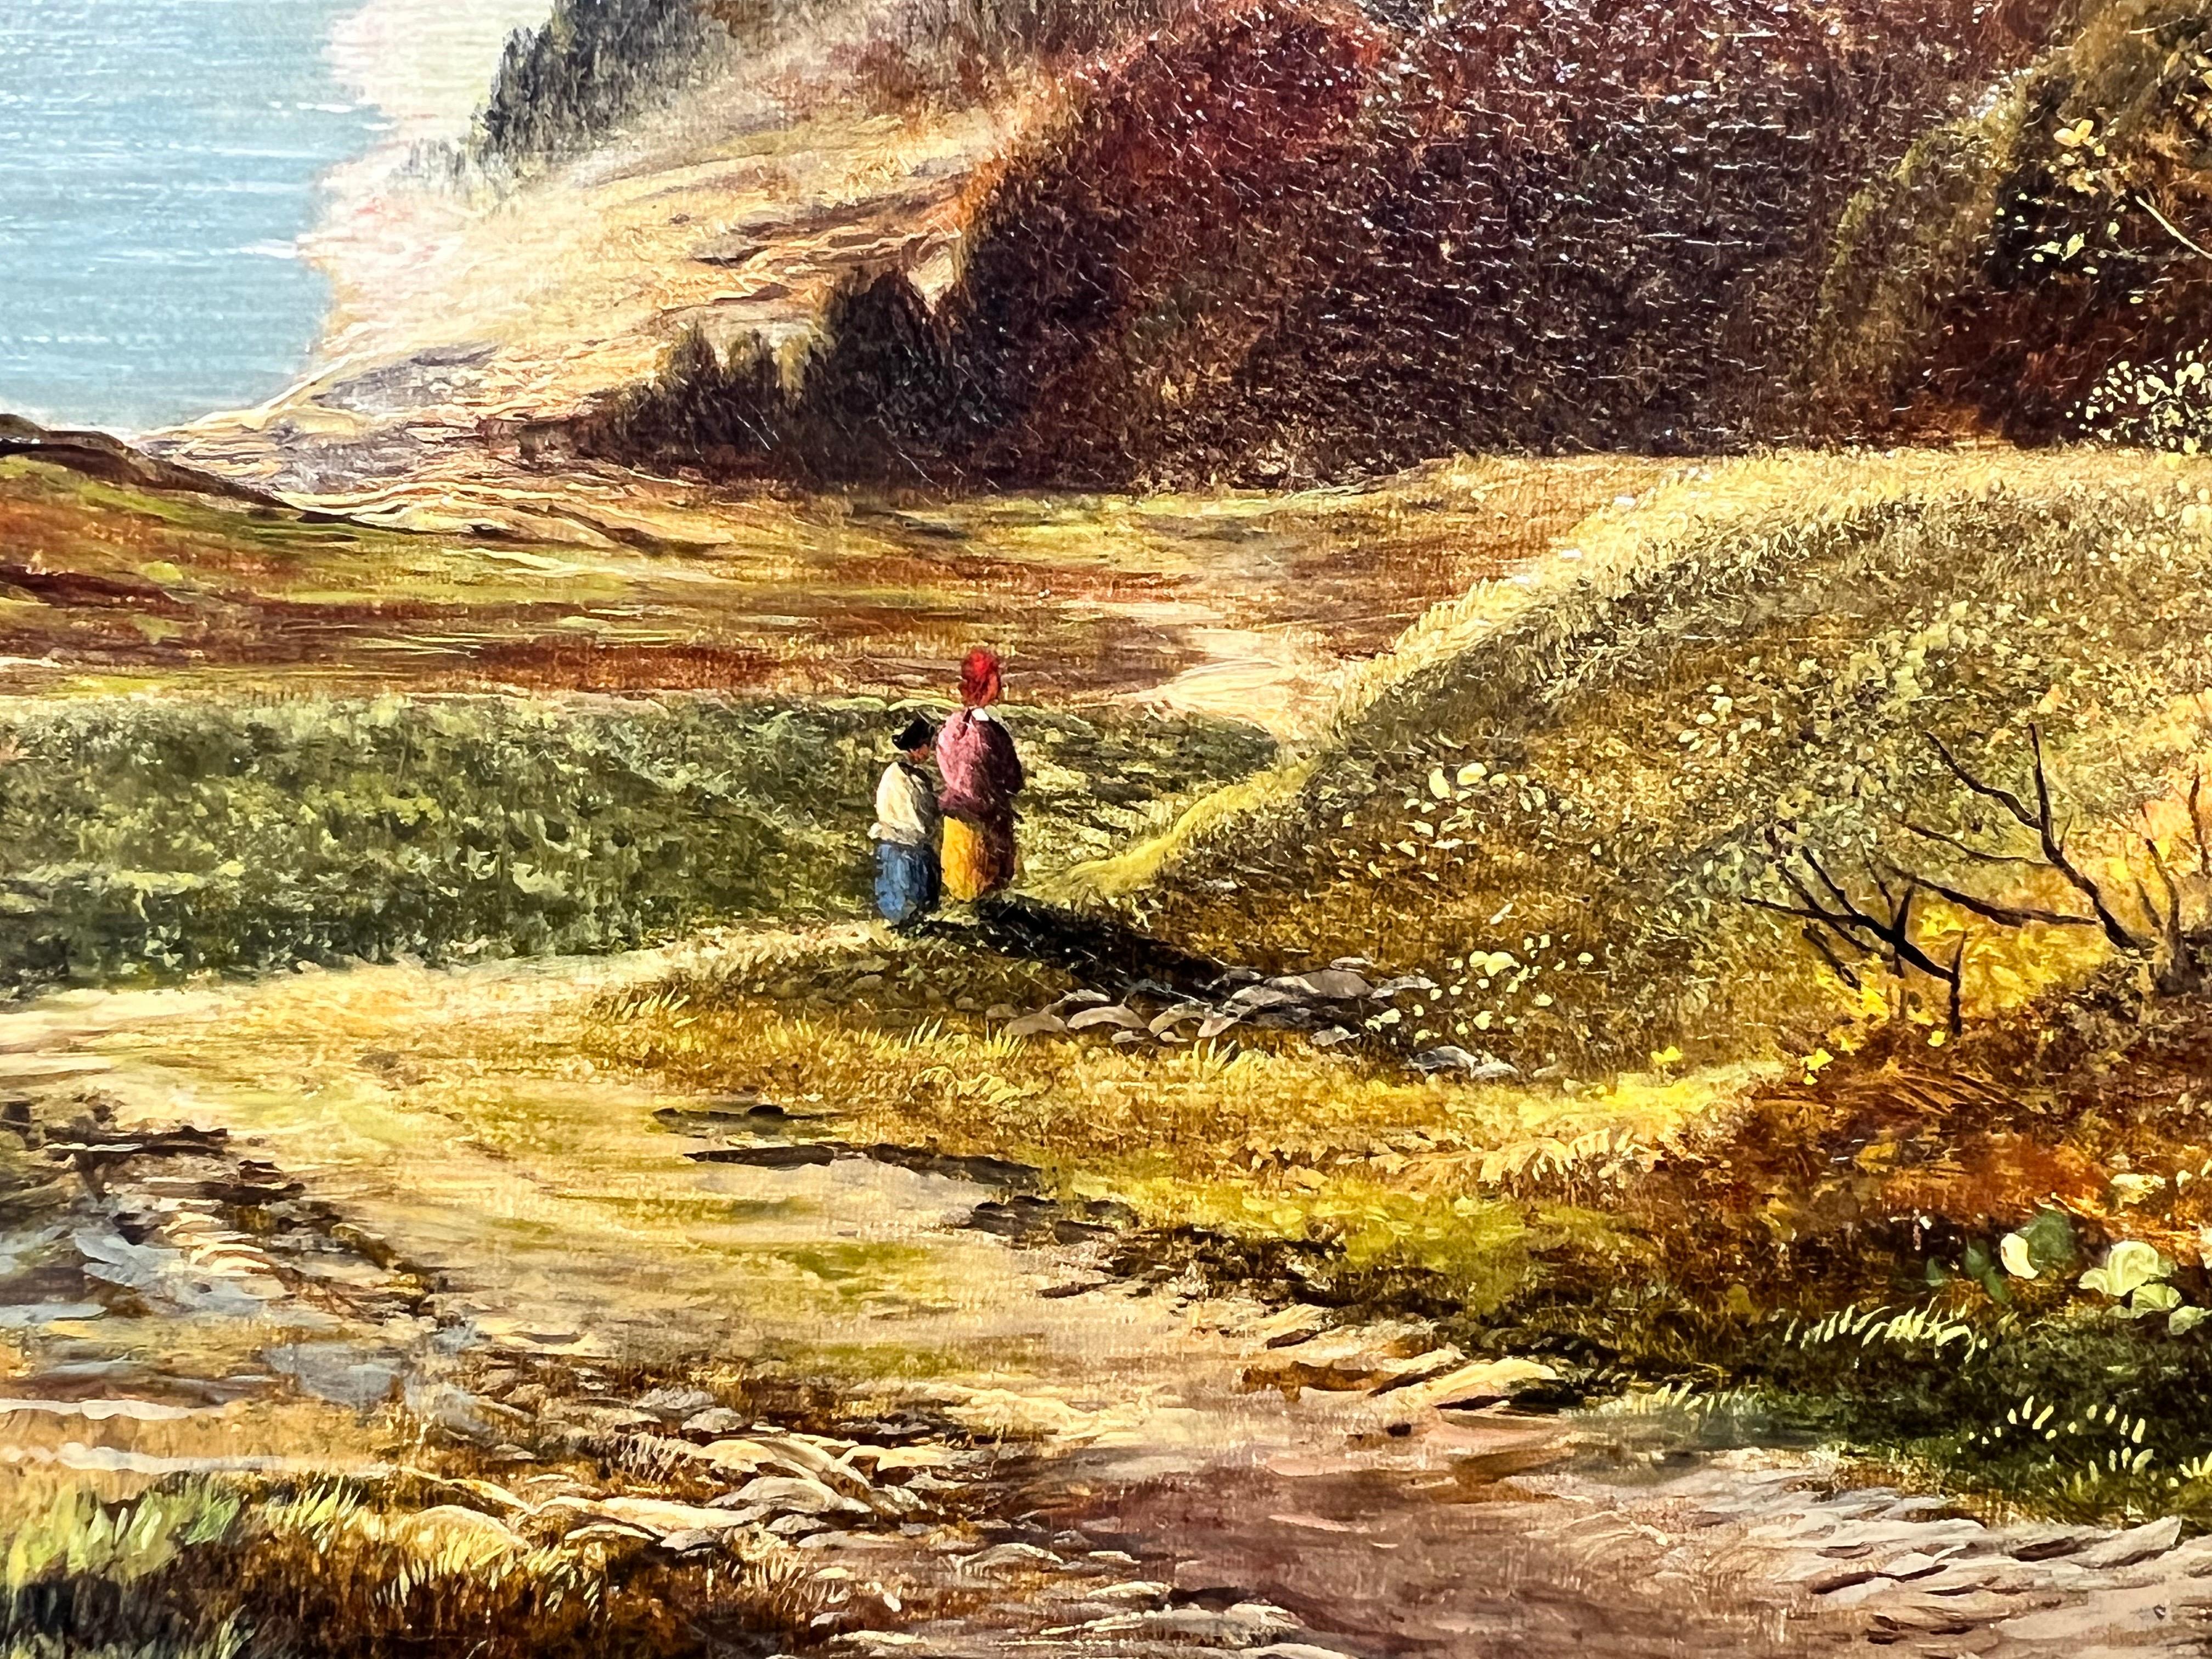 Artisten/Schule: Charles Leslie (britisches 19. Jahrhundert), signiert und datiert 1875

Titel: Das Panoramaloch. Schöne und majestätische schottische Hochland-Szene mit Figuren, die den alten Pfad entlanggehen. Dramatische Bergkette in der Ferne.